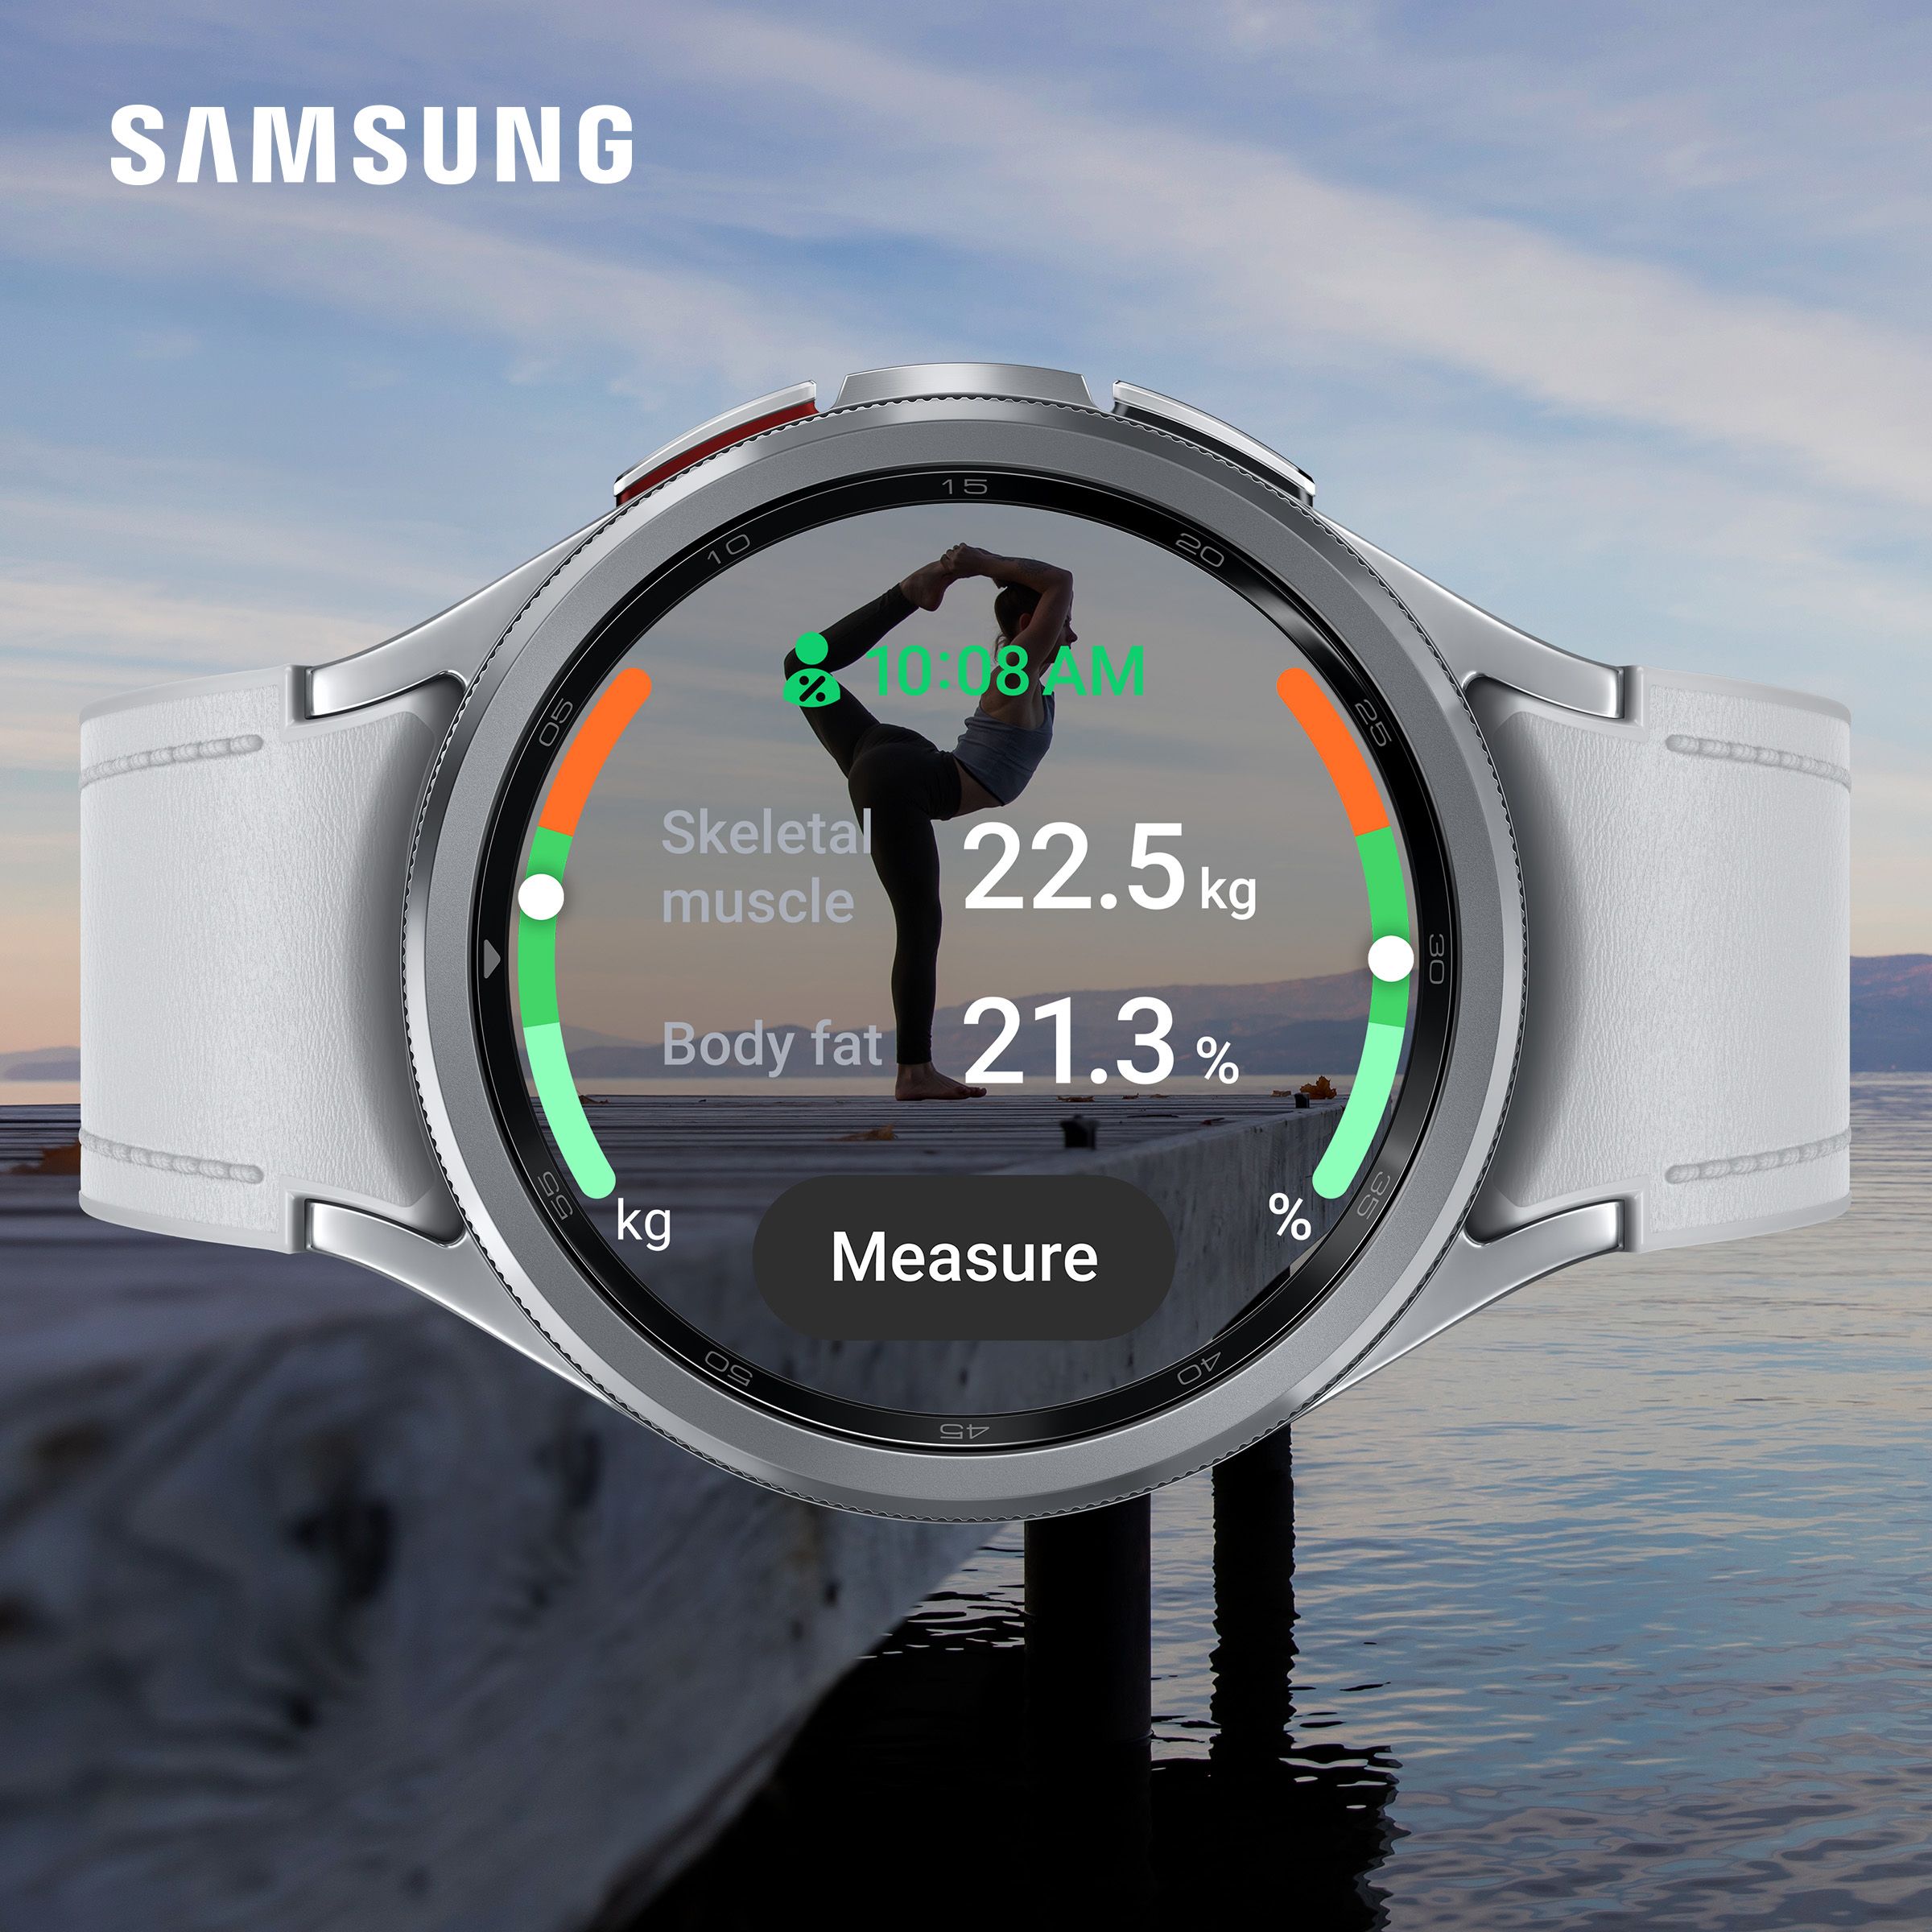 Samsung watches